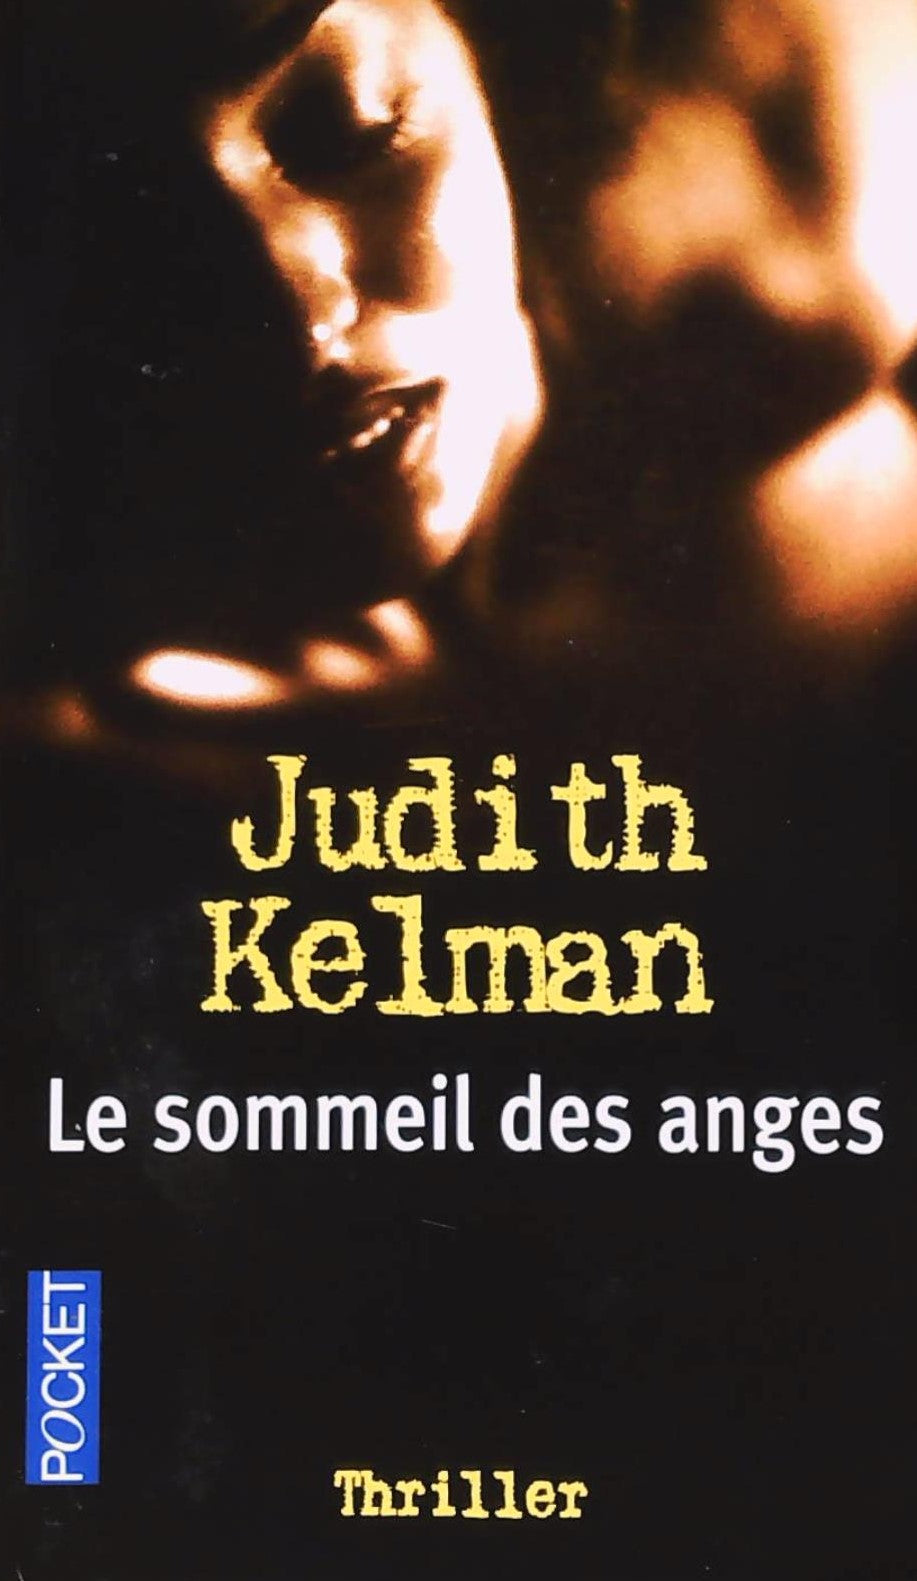 Livre ISBN 2266098349 Le sommeil des anges (Judith Kelman)